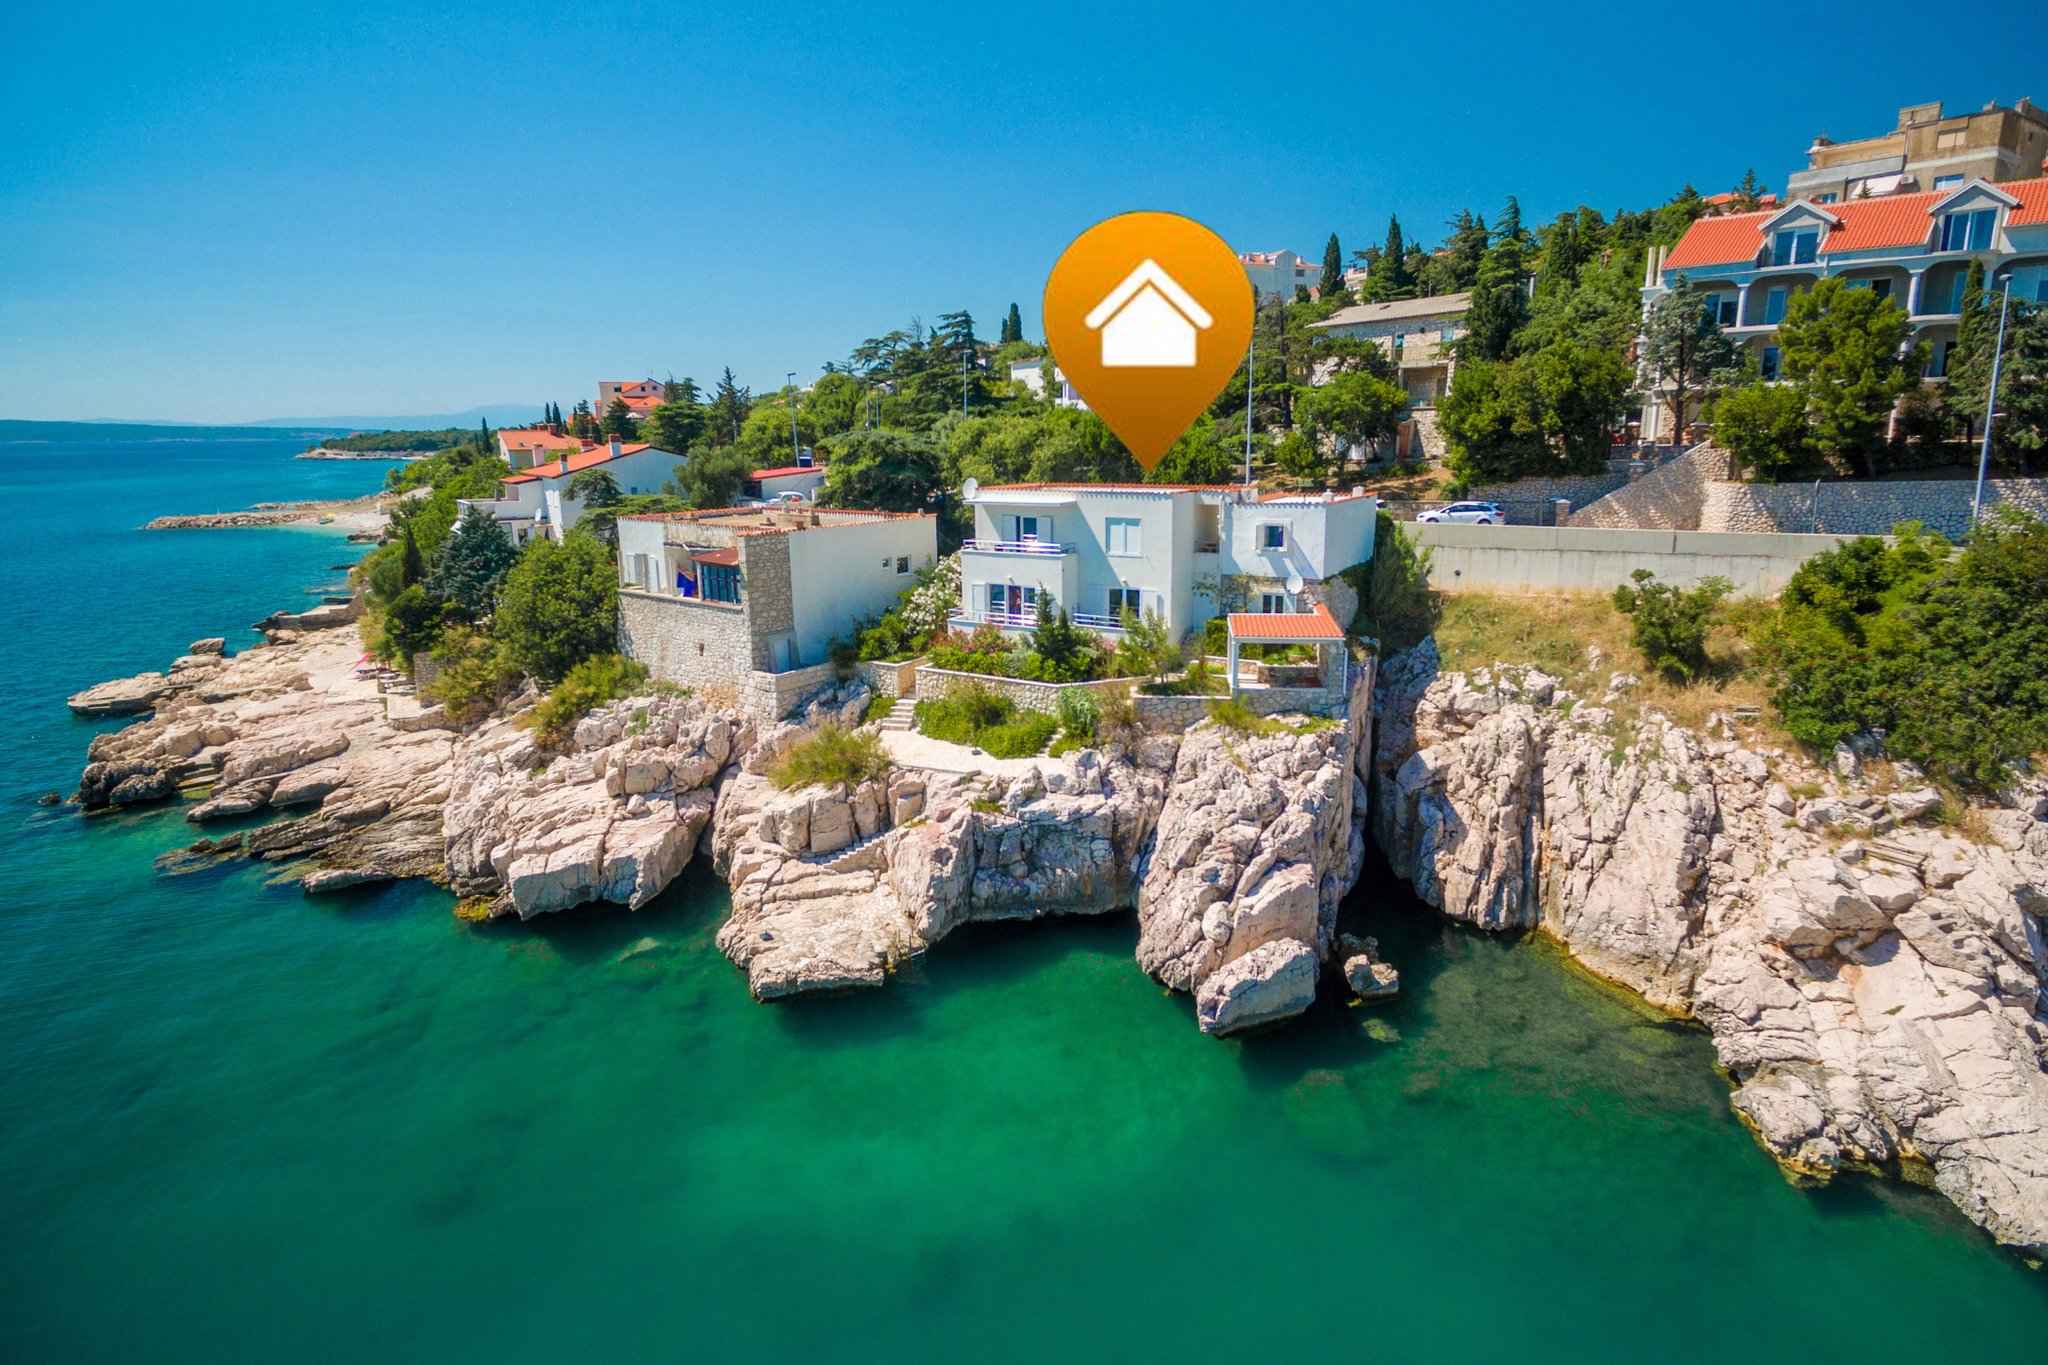 Ferienwohnung direkt am Strand mit Meerblick  in Kroatien